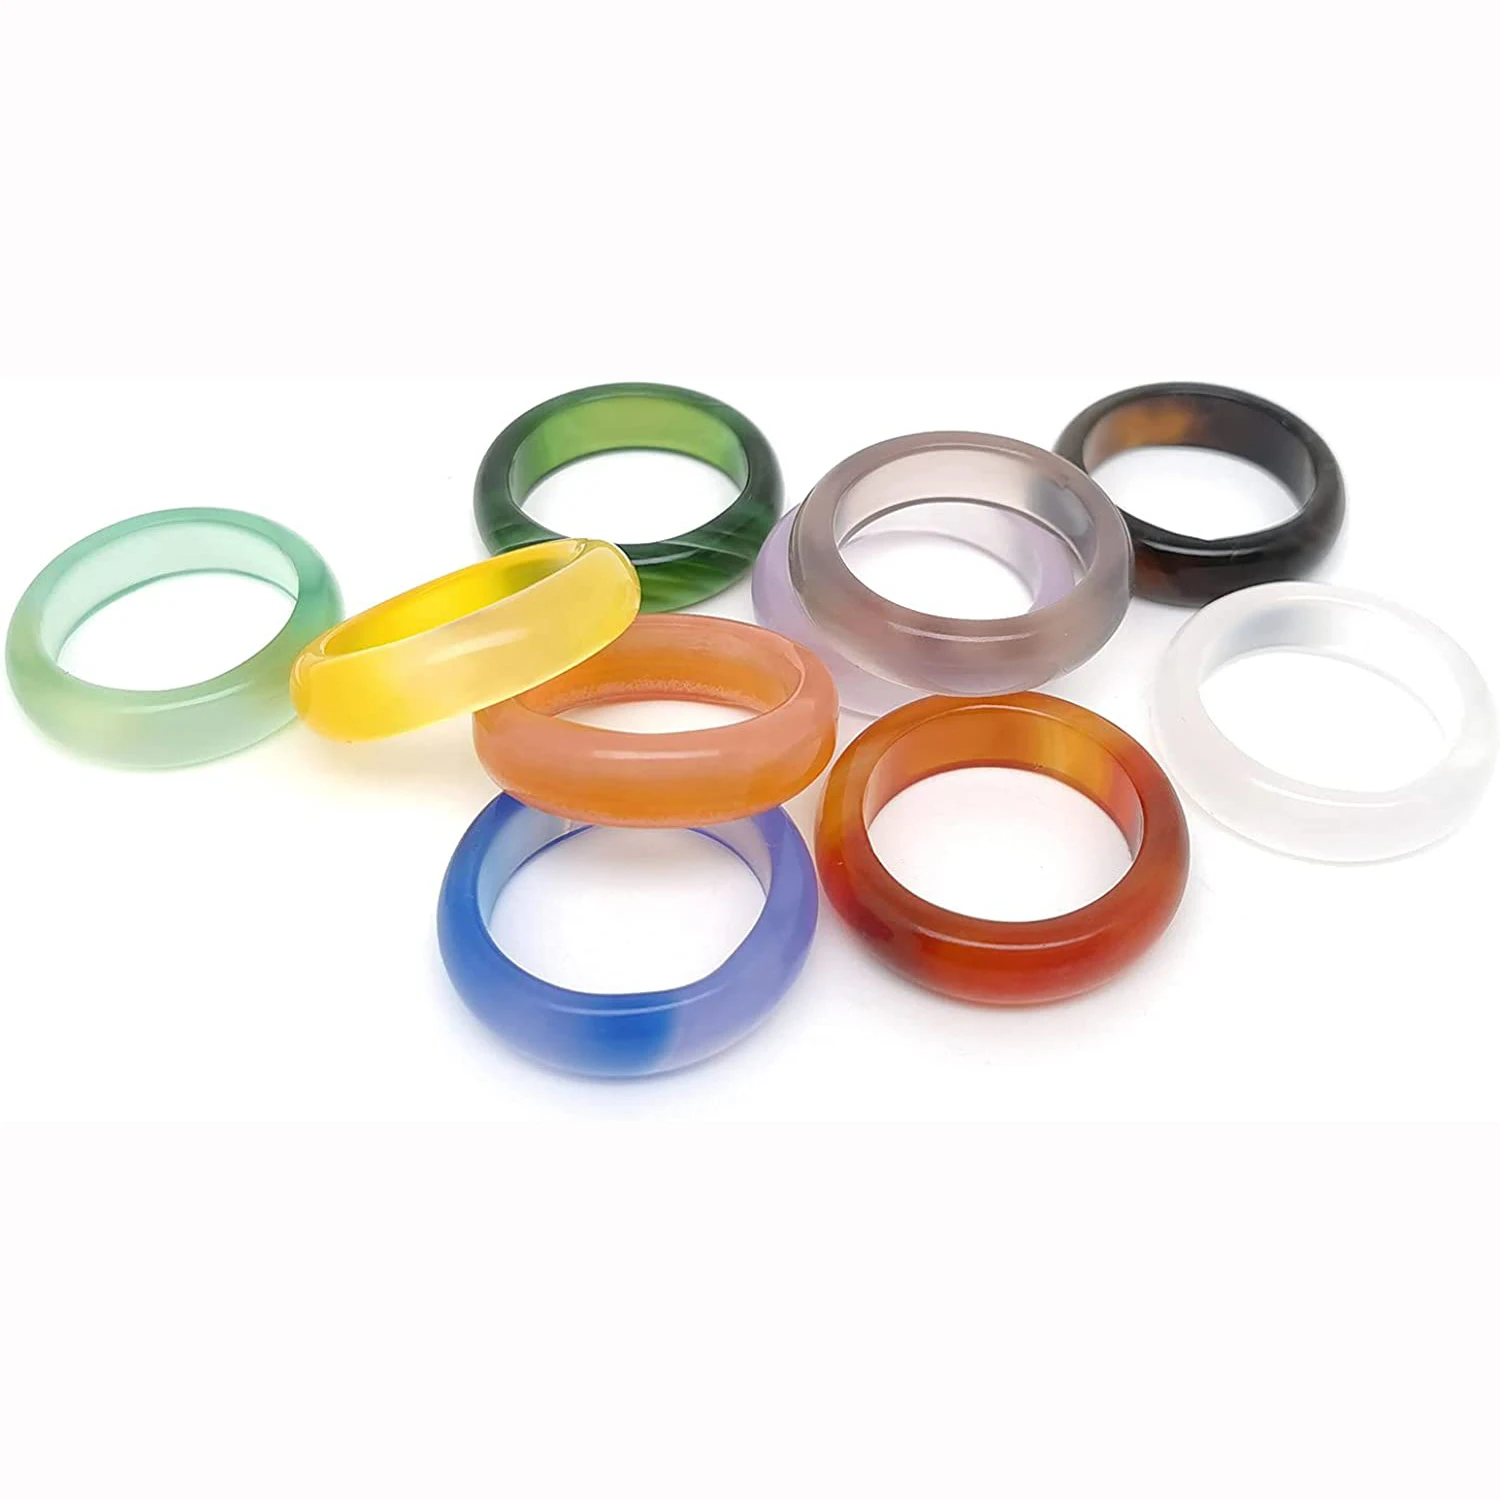 

Женские кольца из агата 10 шт., гладкие разноцветные кольца разных размеров с пончиком толщиной 6 мм, круглые кольца для женщин и девочек на день рождения